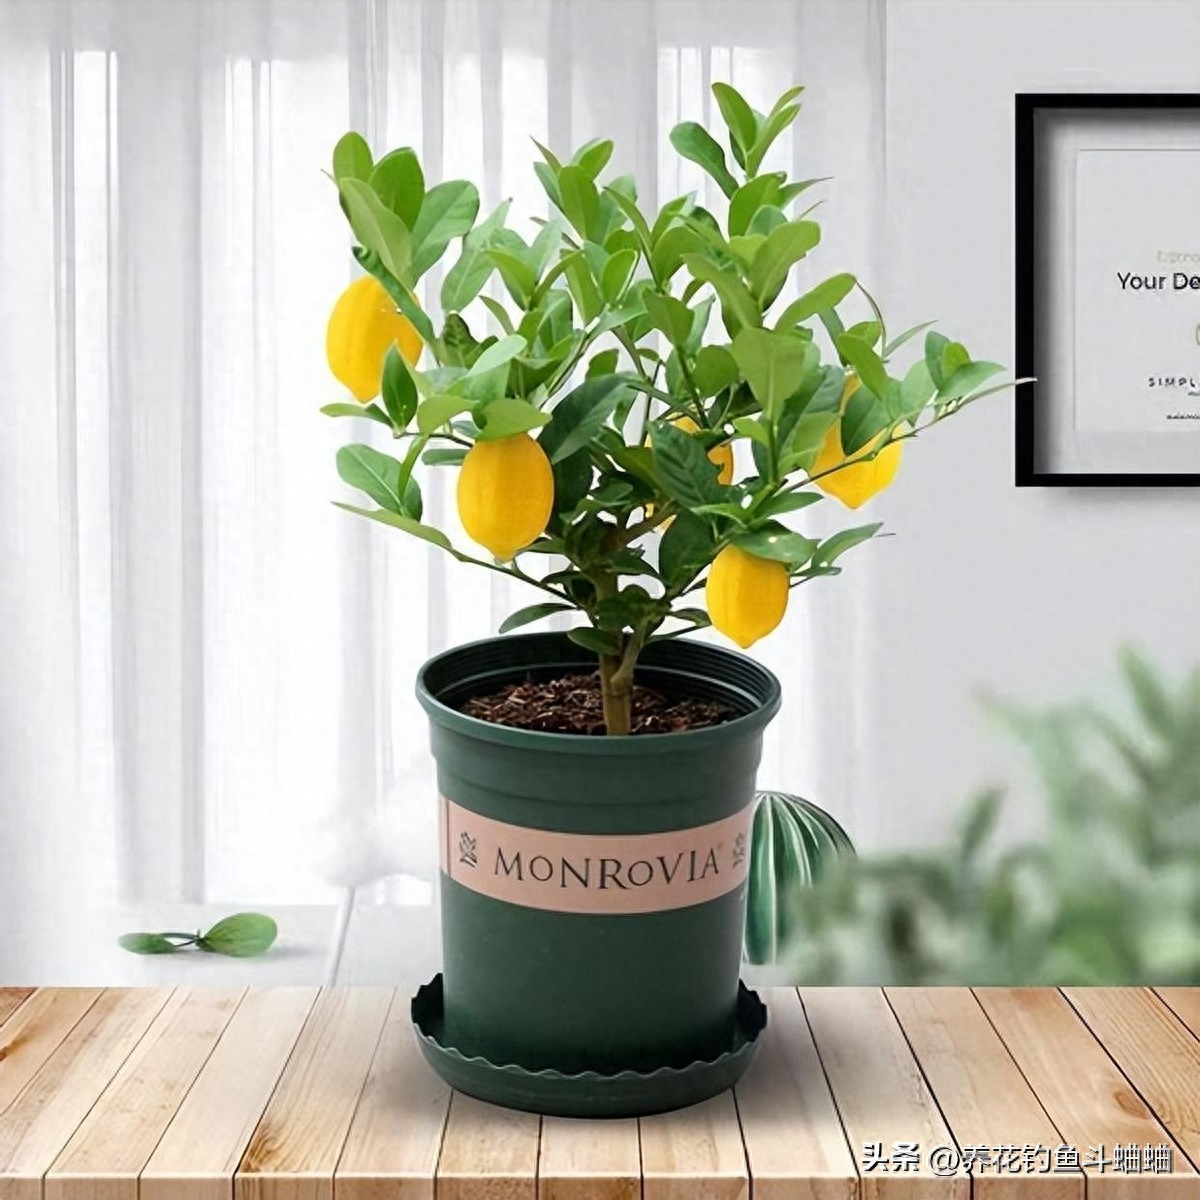 屋里养一盆柠檬盆栽，几年之后就能收获累累硕果，柠檬是一种长在树上的果实，养一盆柠檬，等到它结果的时候，就有充足的天然维C可补充了，而且结果的时候，样子也非常的漂亮，